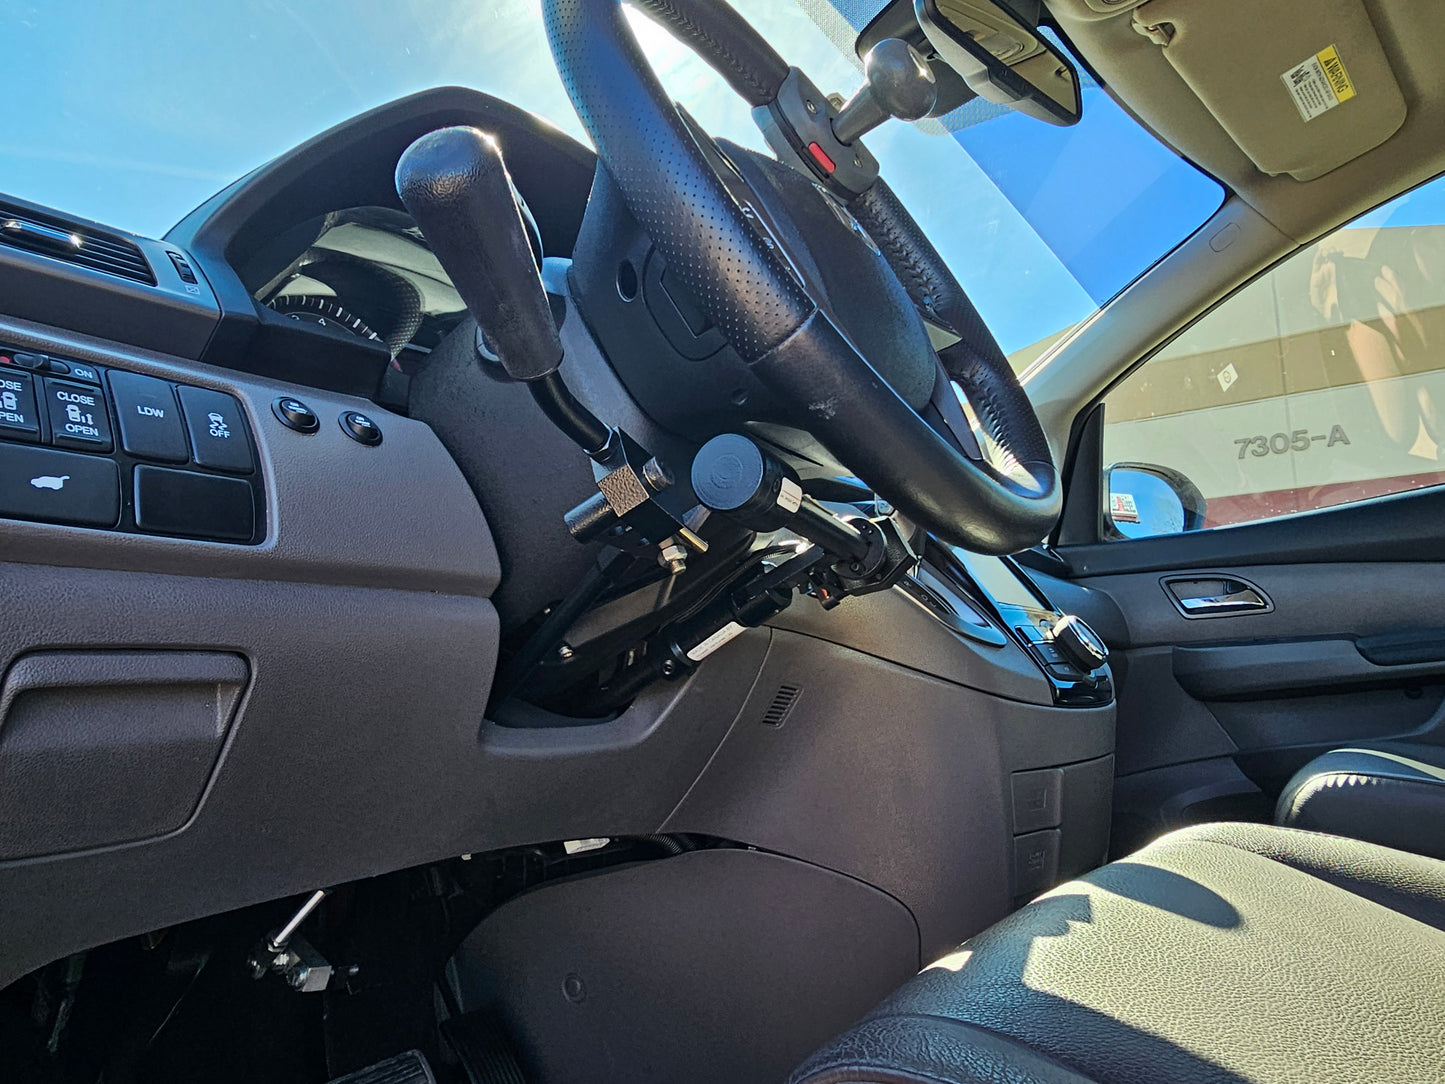 2016 Honda Odyssey